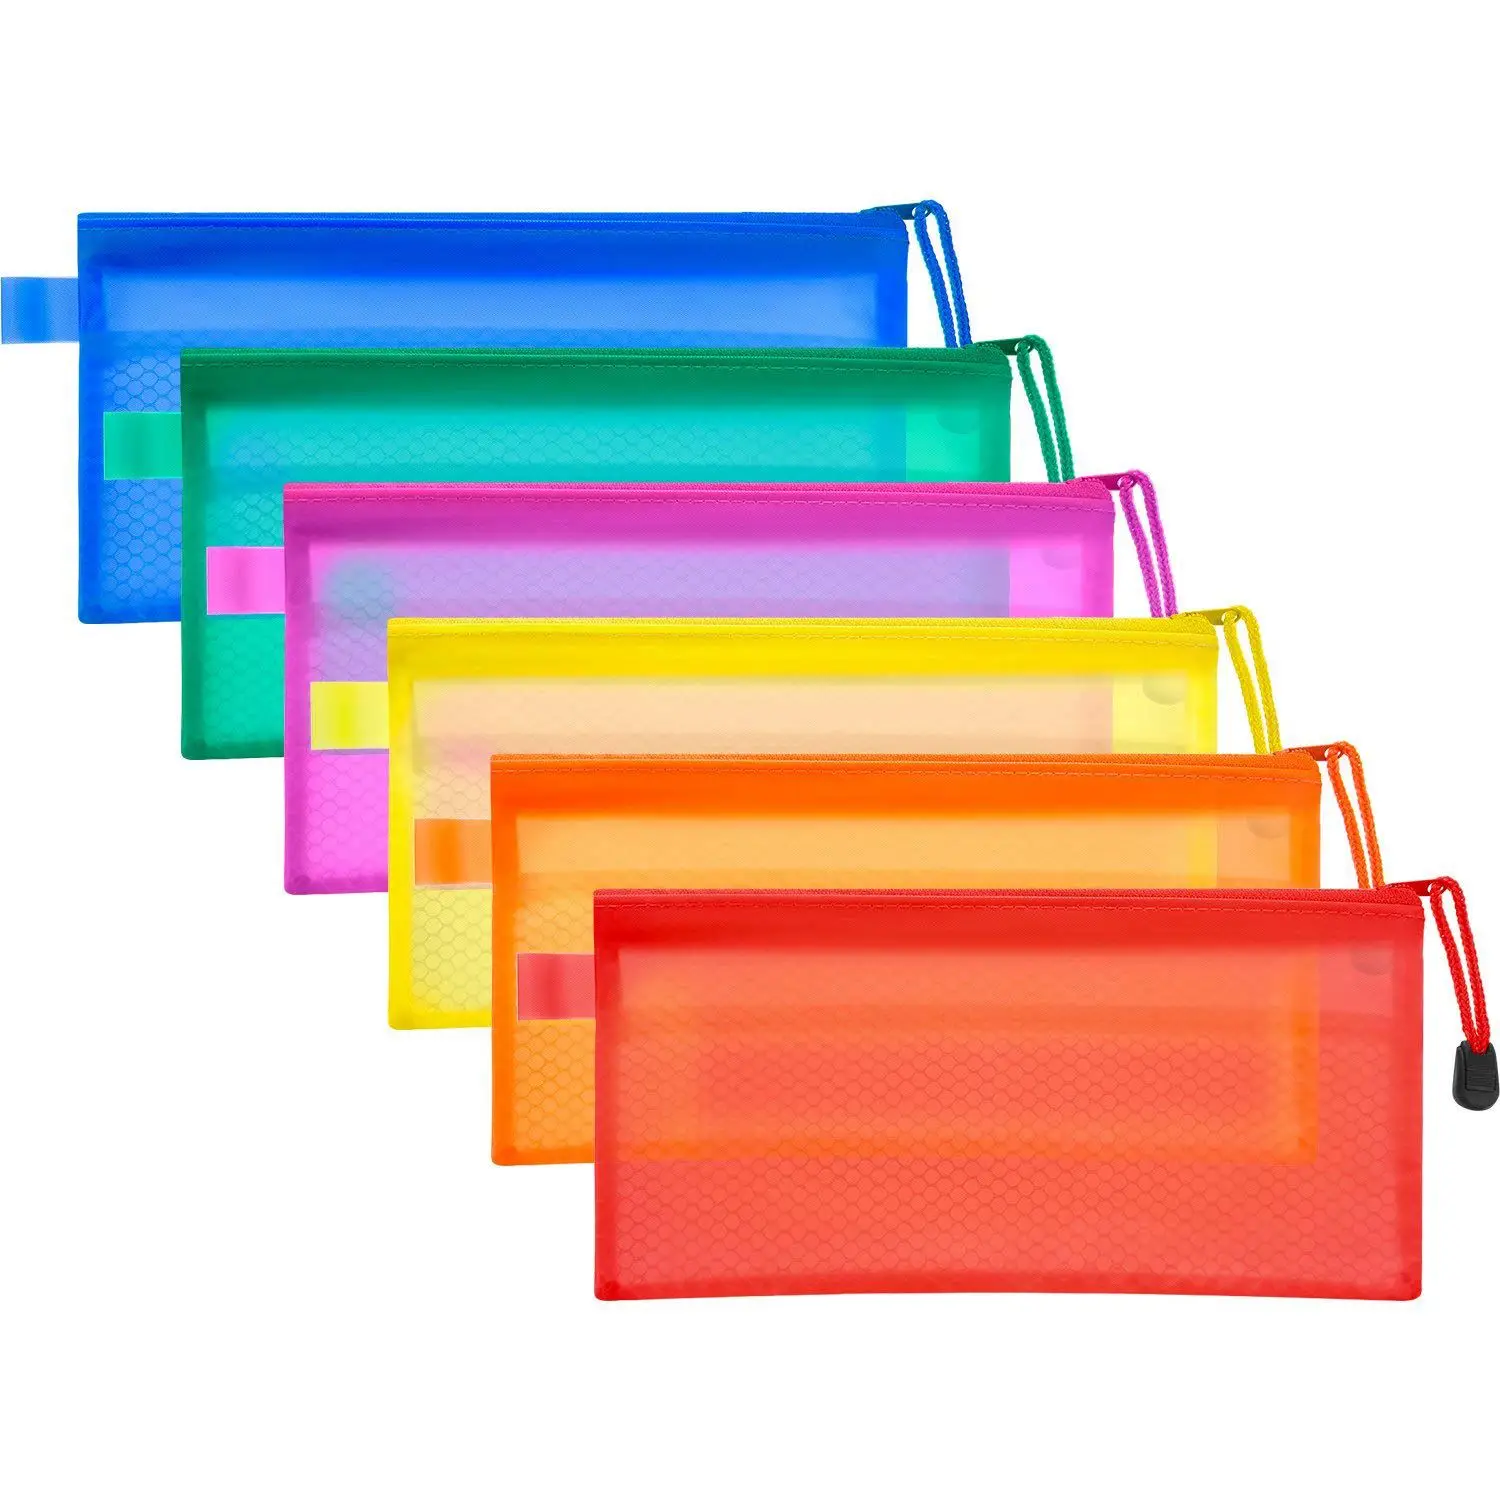 PPYY Новый-12 шт. 6 цветной карандаш сумка молния файл сумки водостойкий двойной слой для ручки сумка Косметика принадлежности путешествия Acces